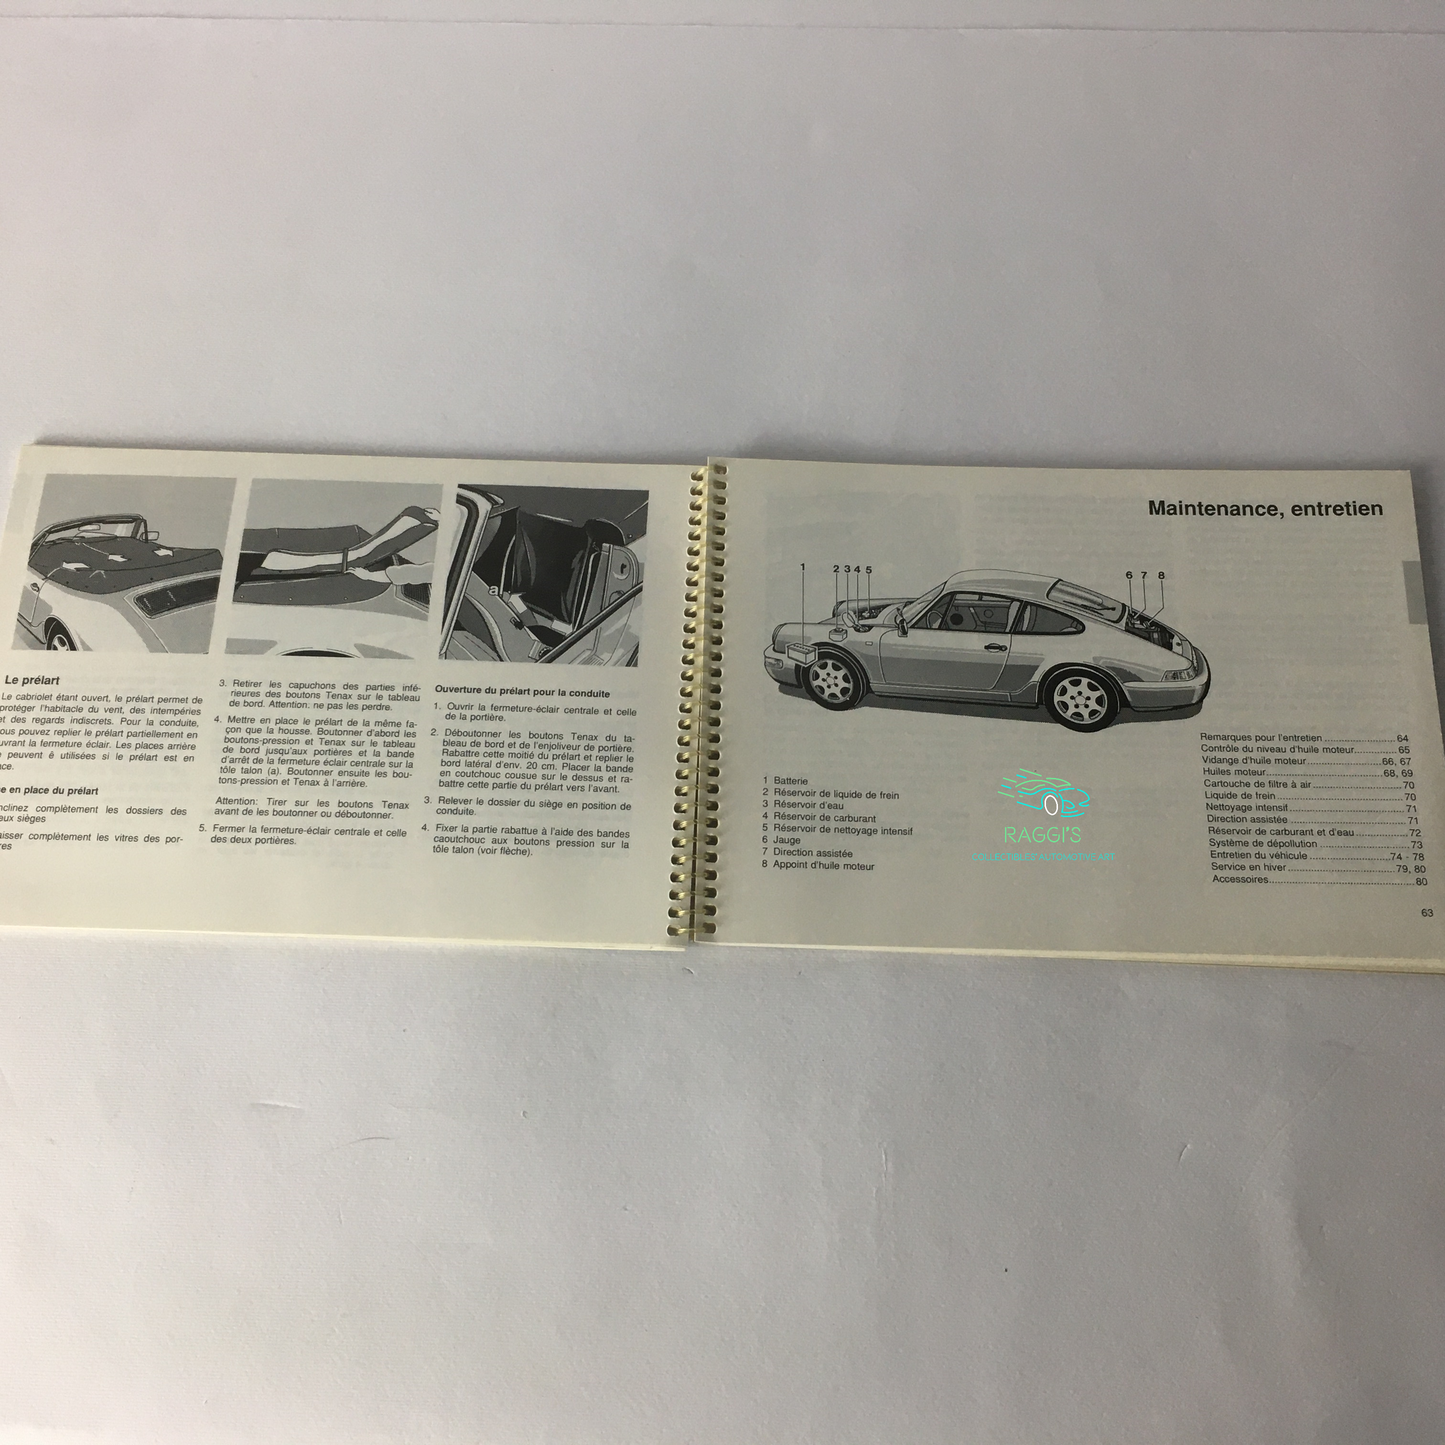 Porsche, Porsche 911 Carrera 2 and 911 Carrera 4 Technical Manual, Porsche Model History Collection from 1950 to 1988, Porsche Training Tiptronic